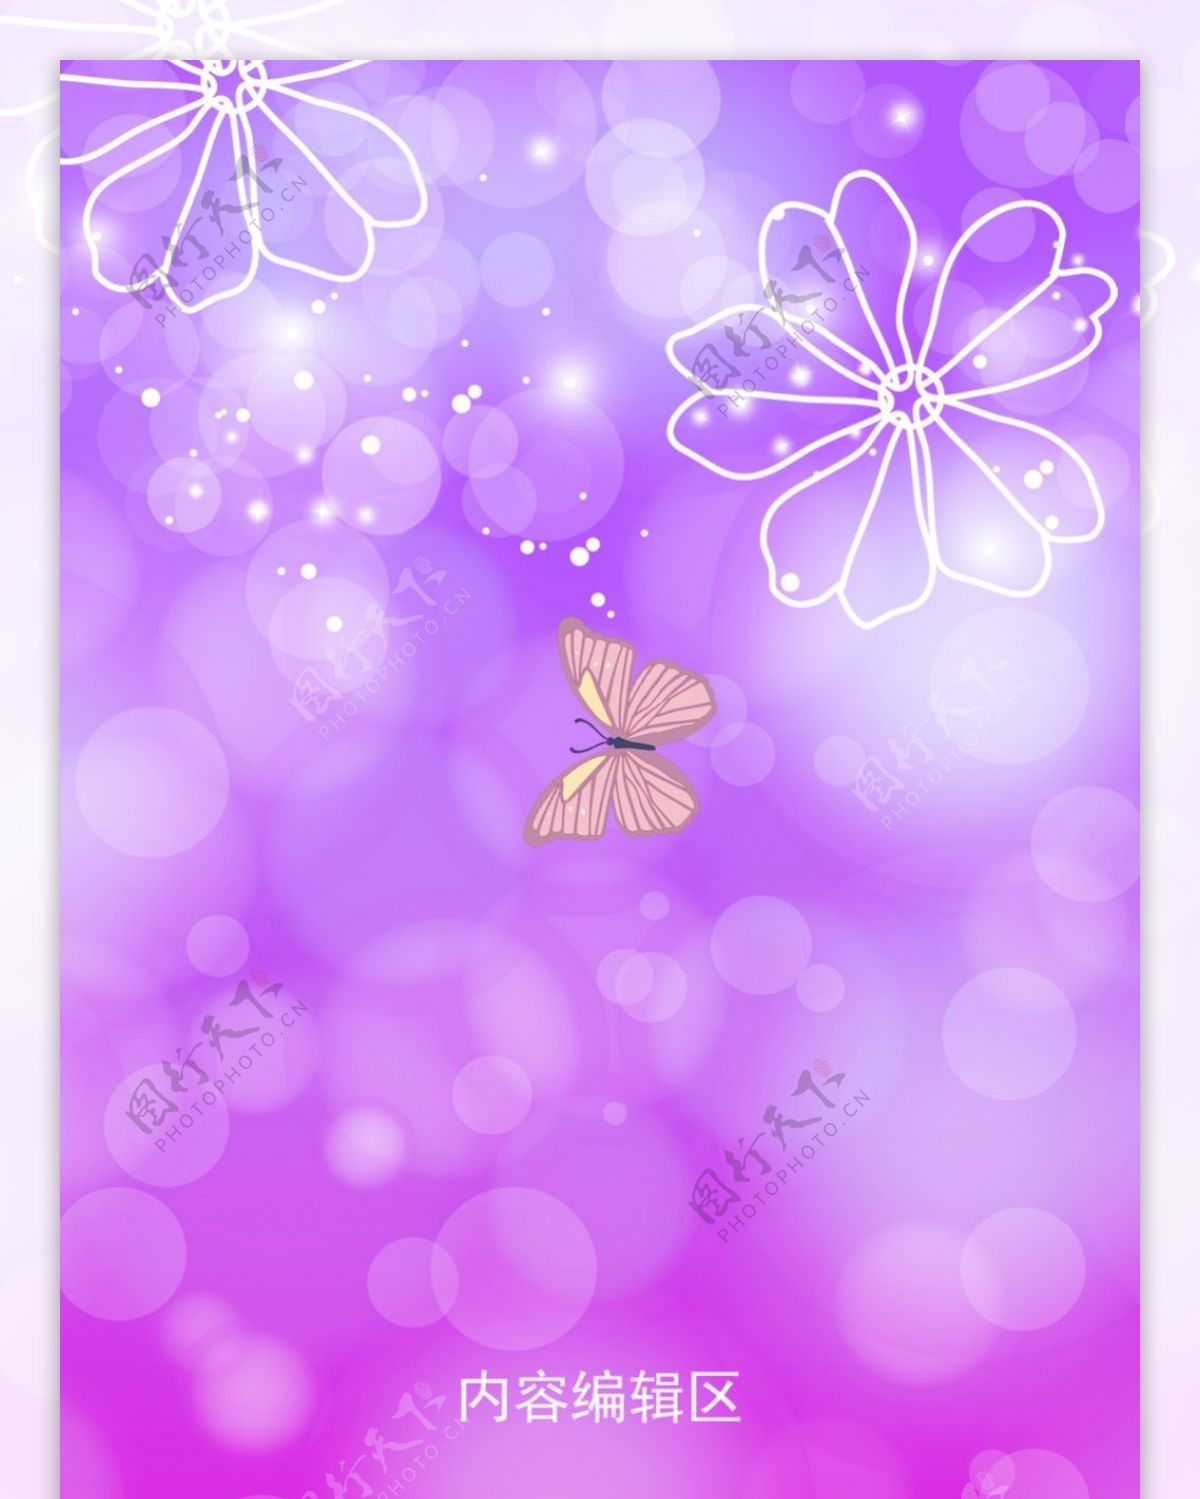 精美紫色画面梦幻展架设计模板素材海报画面